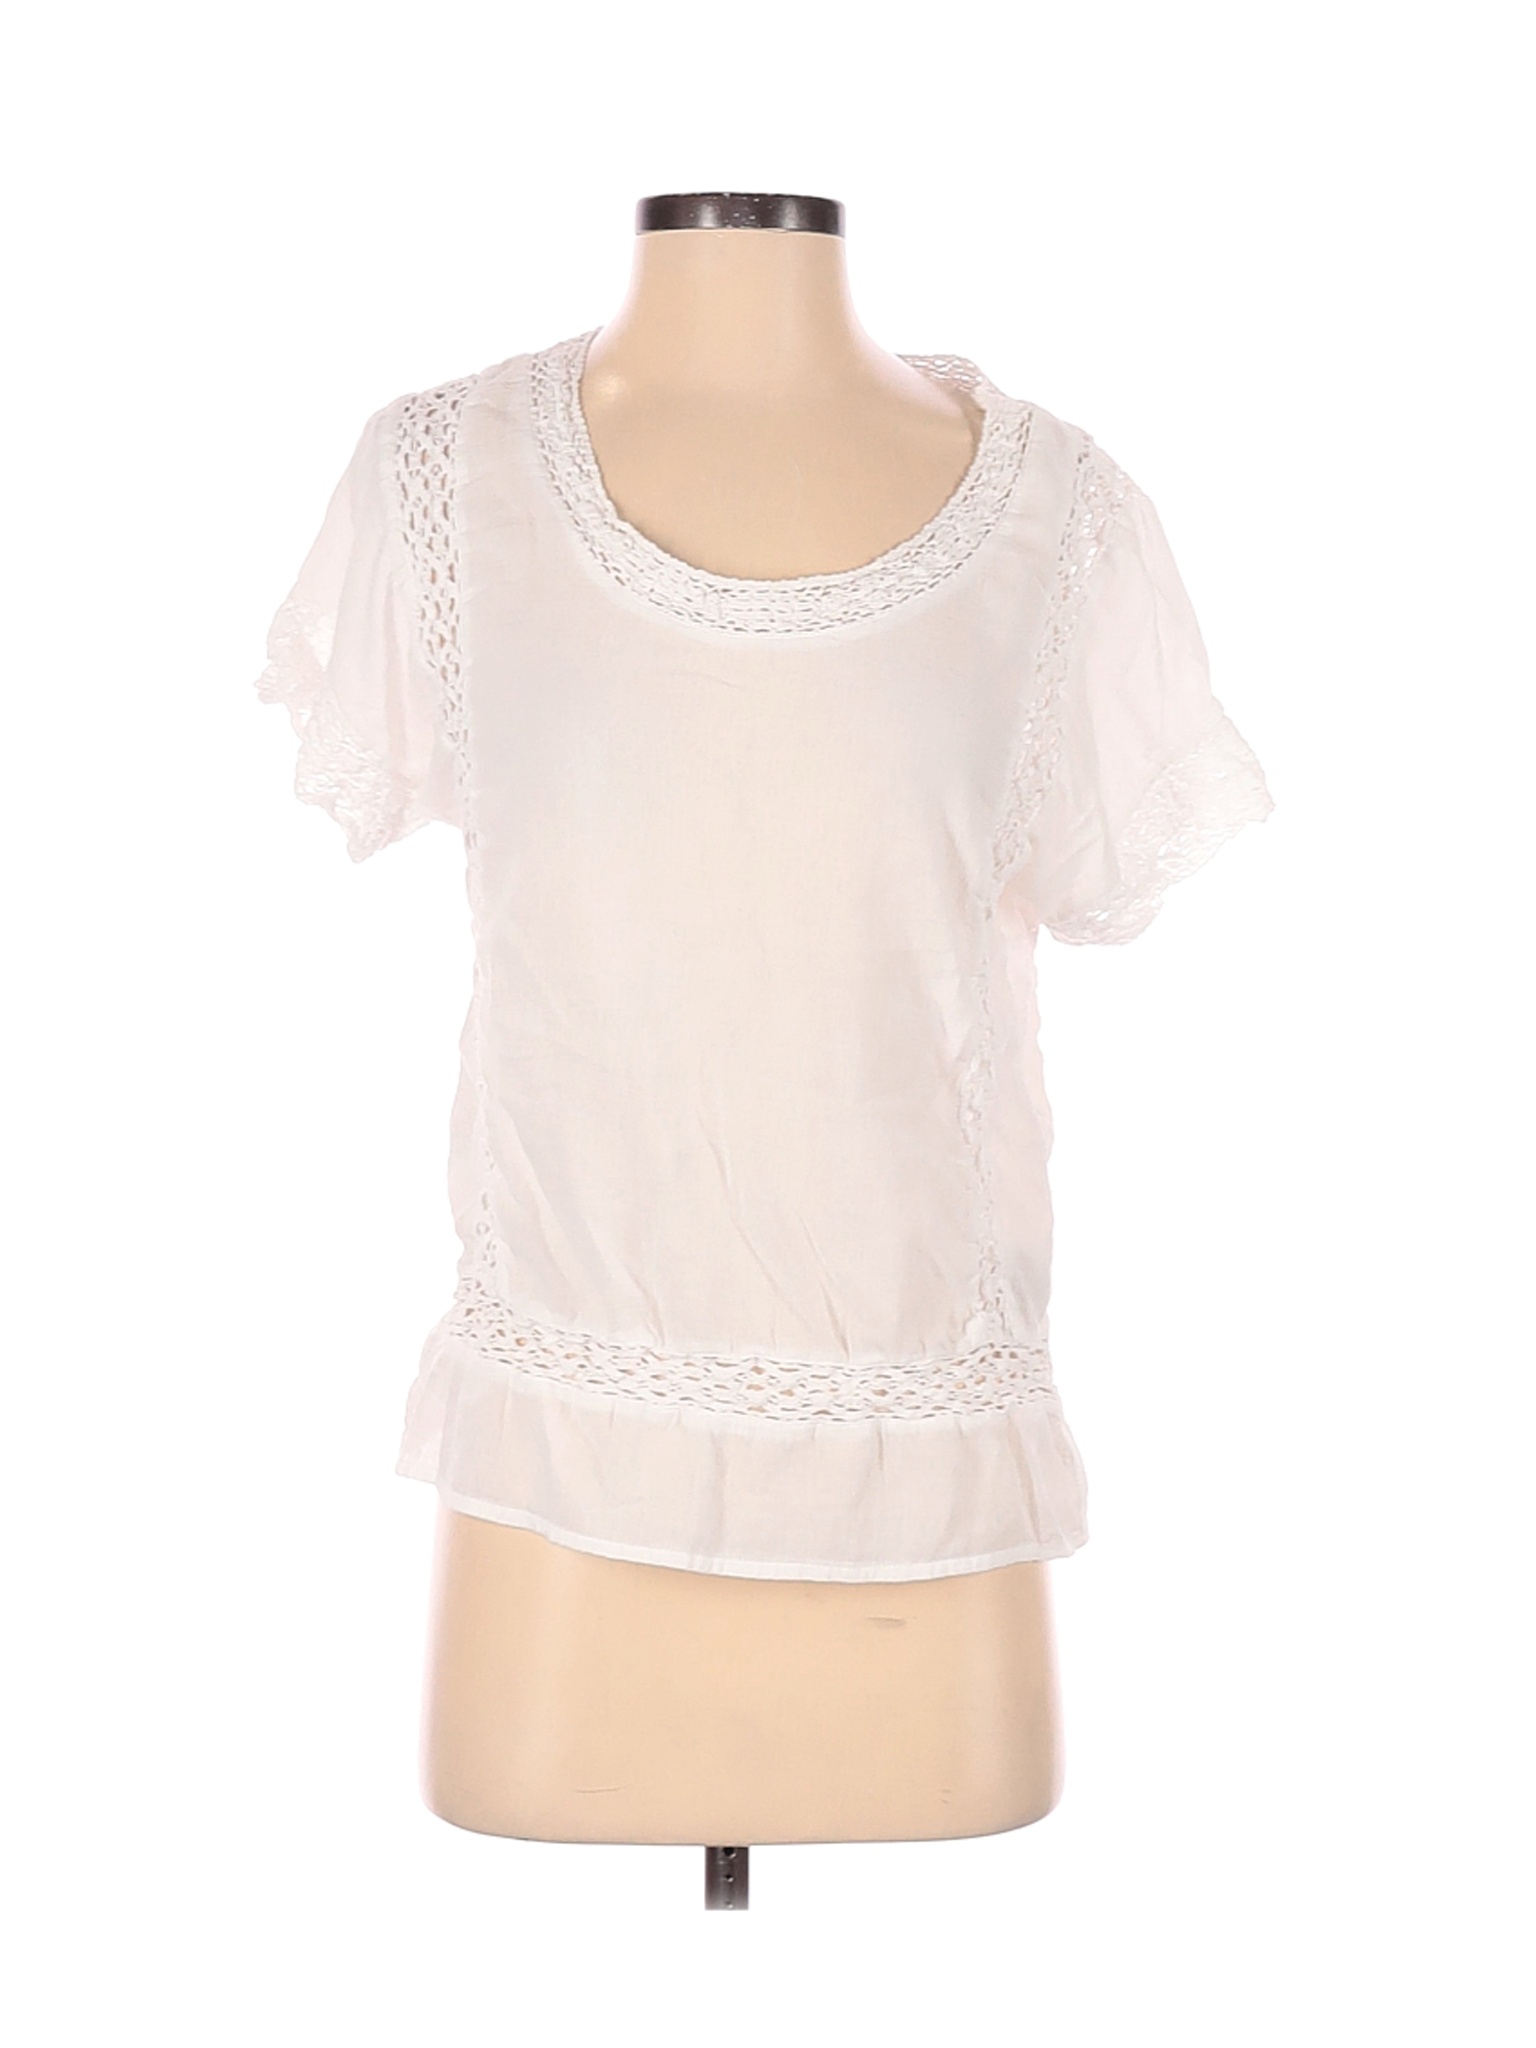 Denim & Supply Ralph Lauren Women Ivory Short Sleeve Blouse S | eBay